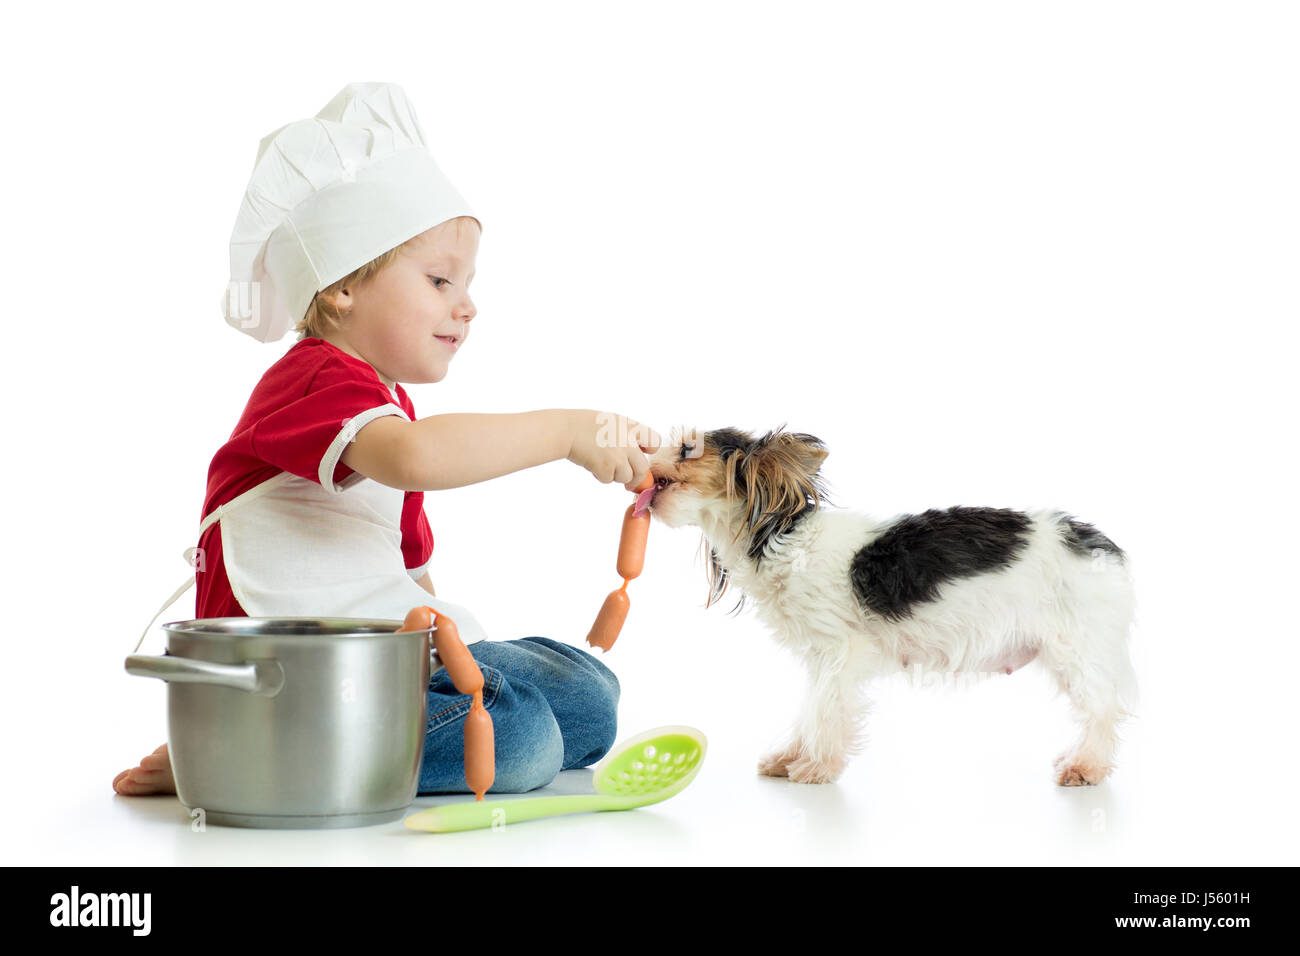 Gioco di ruolo. Kid boy gioca chef con pet. Bambino usurata feed cook cane. Foto Stock